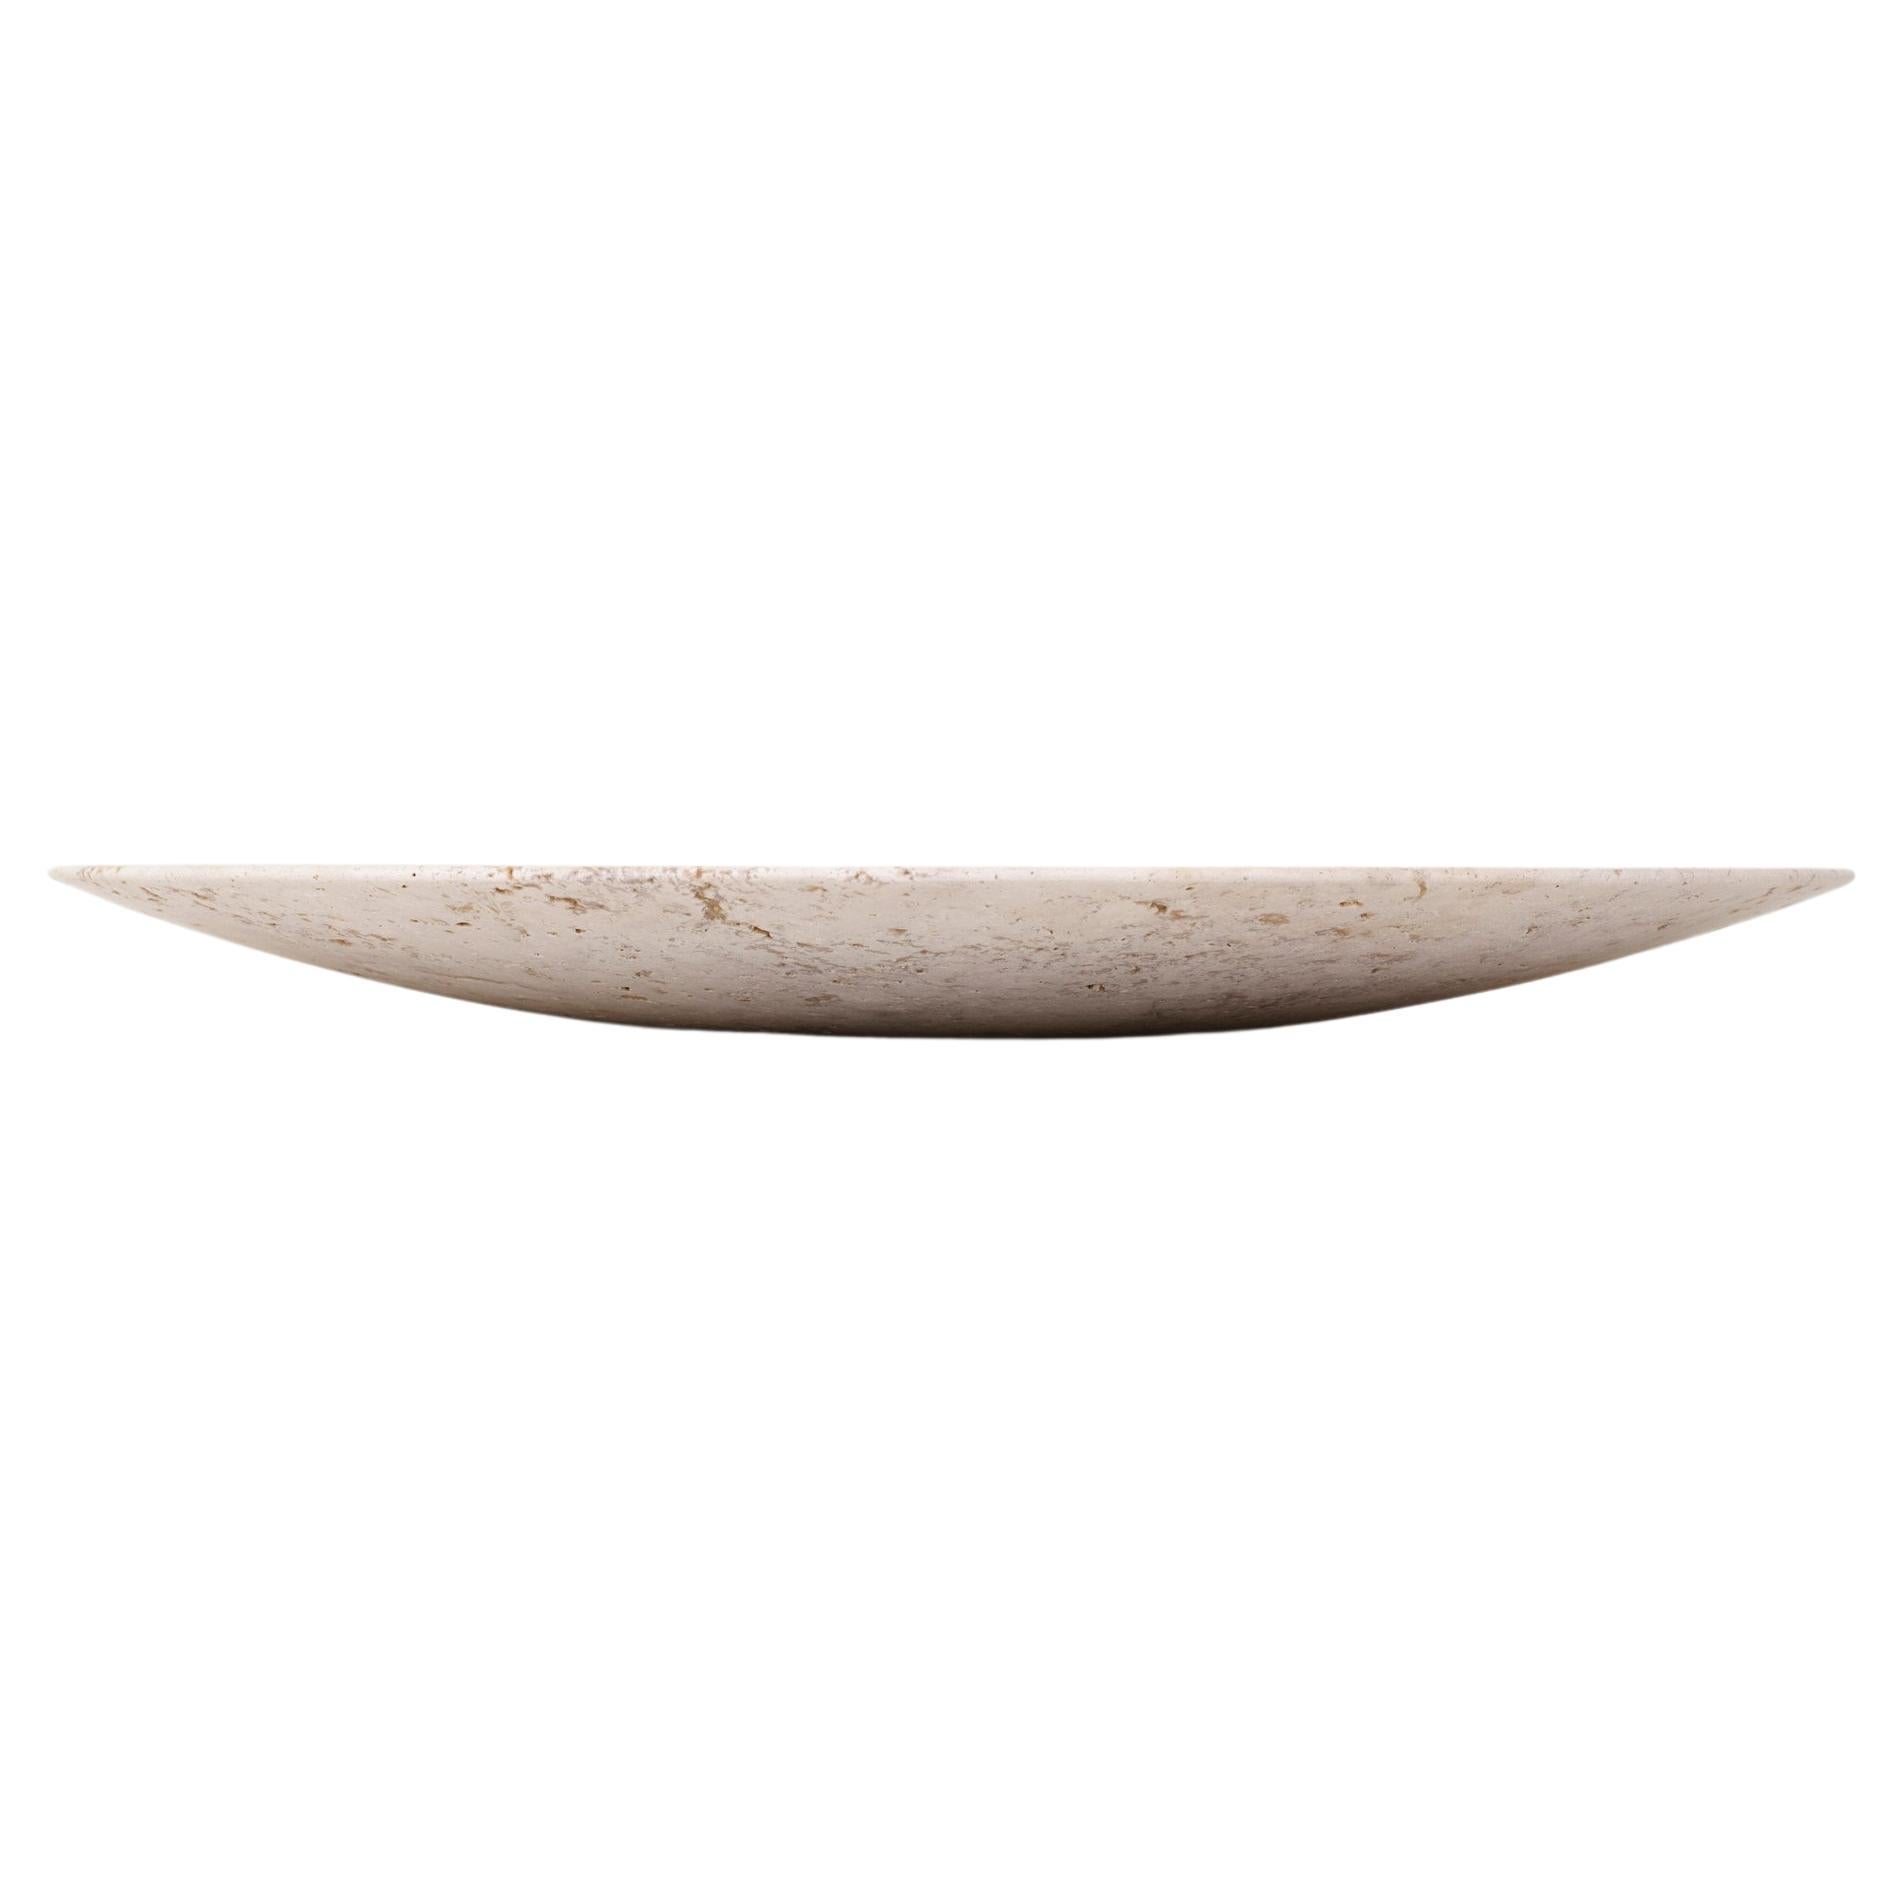 Conçue par Space Copenhagen, cette assiette polie à la main fait partie de la série Collect, une ligne de produits d'ameublement et d'objets pour la maison magnifiquement fabriqués. Fabriquée à partir de travertin beige, chaque plaque est une pièce